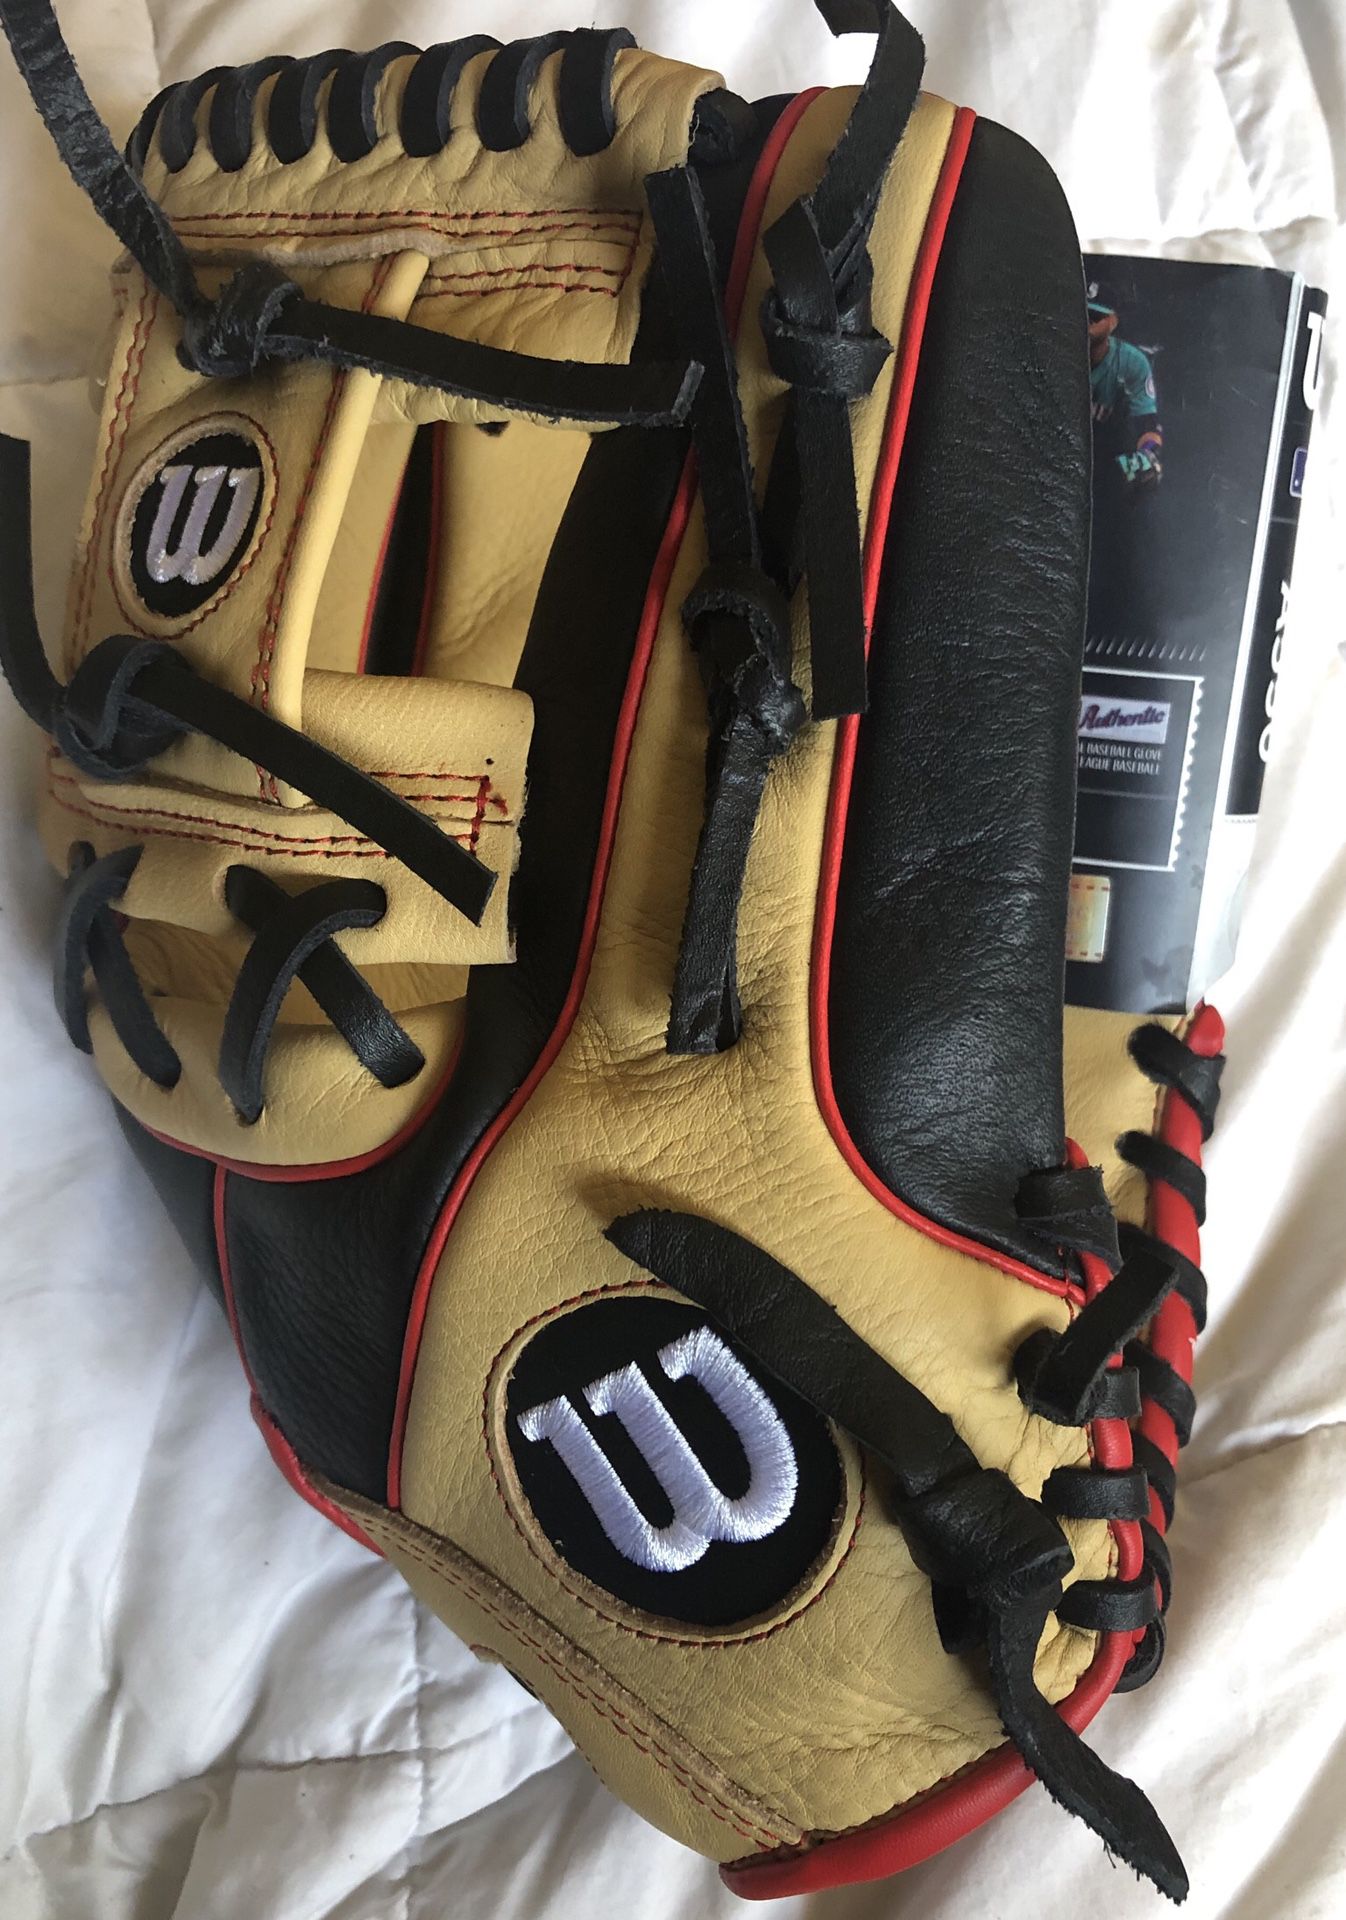 Wilson A550 Baseball Glove